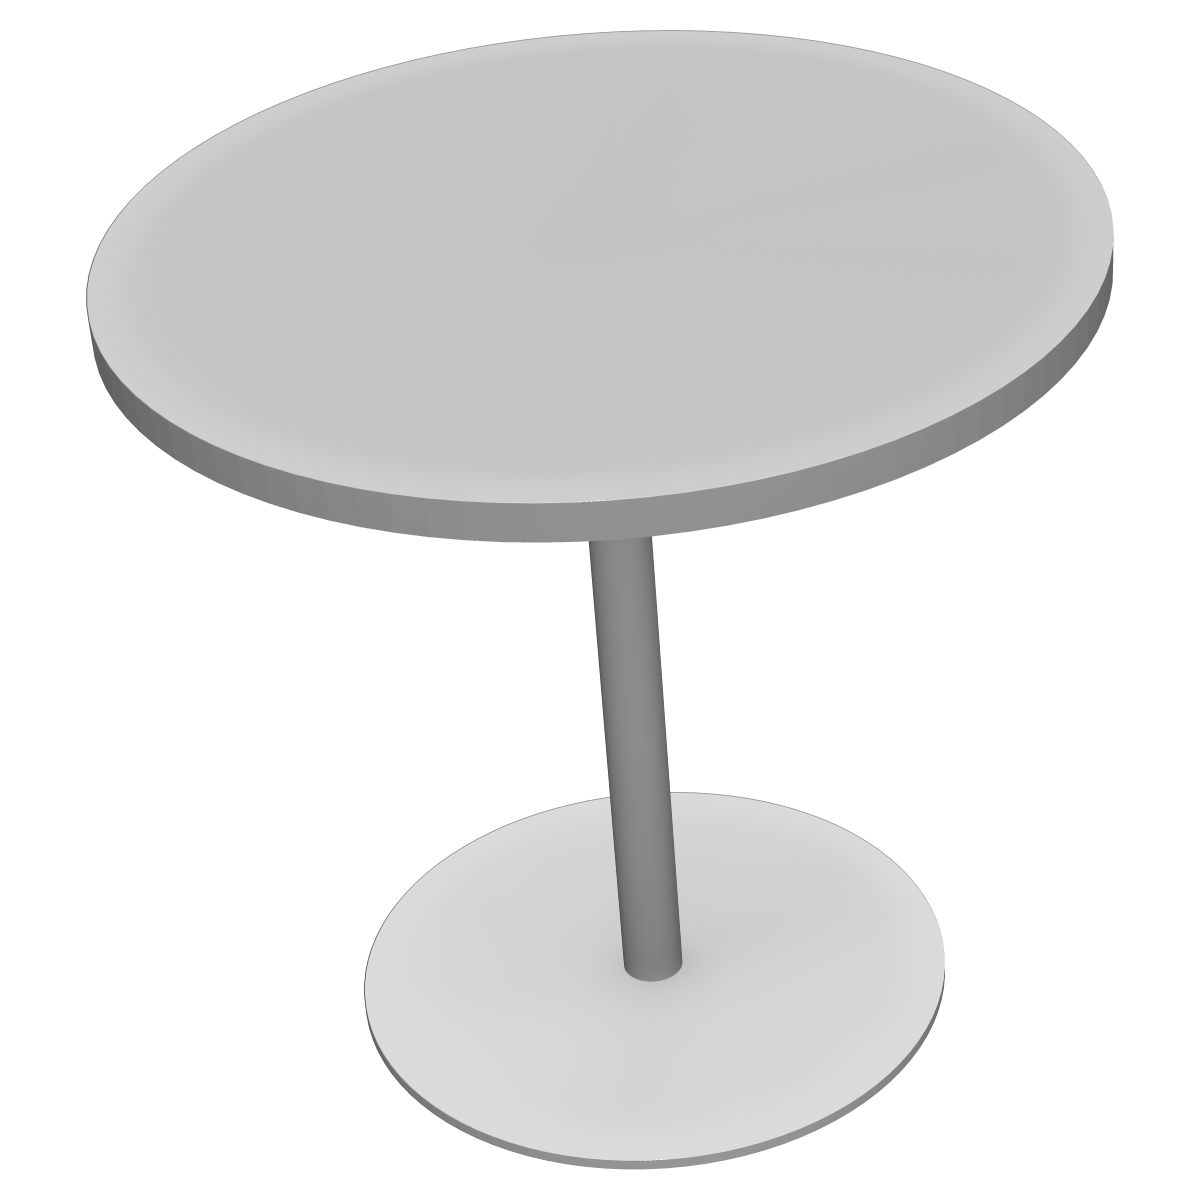 丸型ミーティングテーブルの3Dイラスト